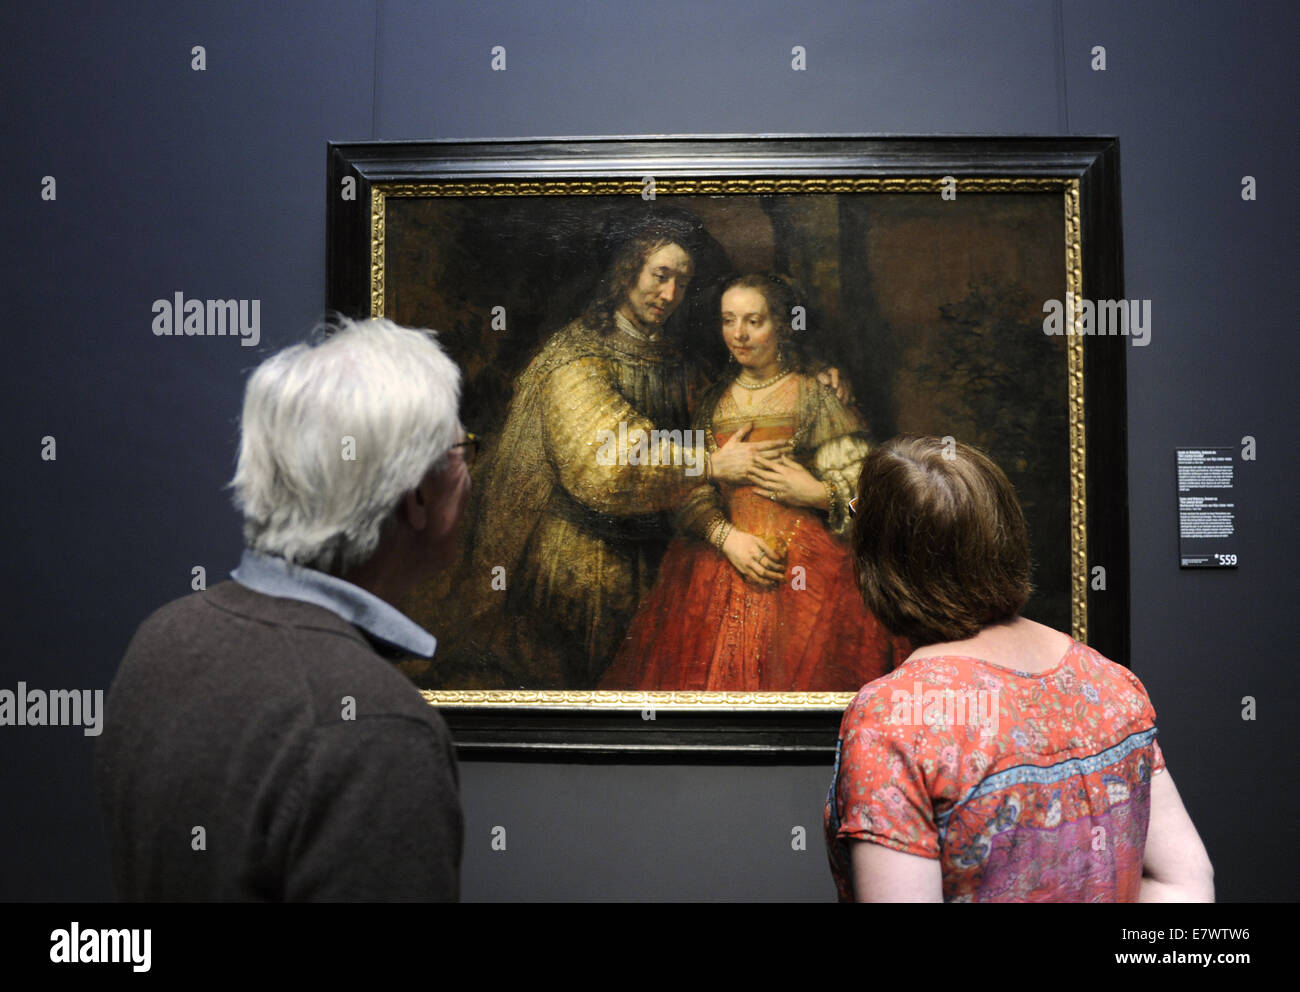 Giovane guardando la sposa Jewisth, 1667 Da Rembrandt (1606-1669). Olio su tela. Rijksmuseum. Amsterdam. Paesi Bassi. Foto Stock